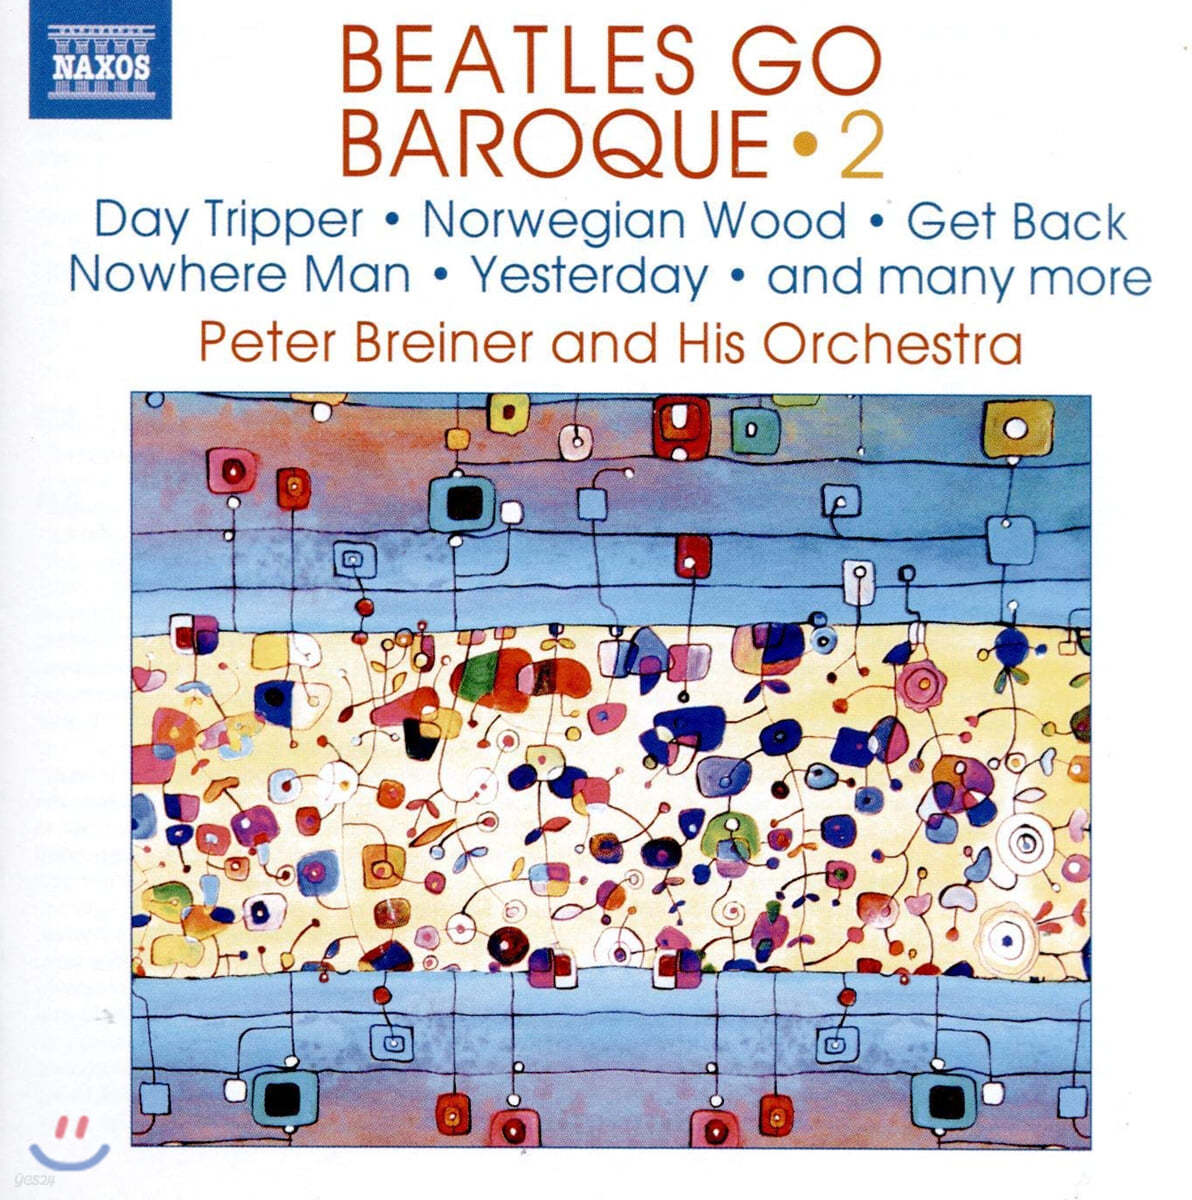 바로크로 간 비틀즈 2집 (Peter Breiner - Beatles Go Baroque Vol. 2)